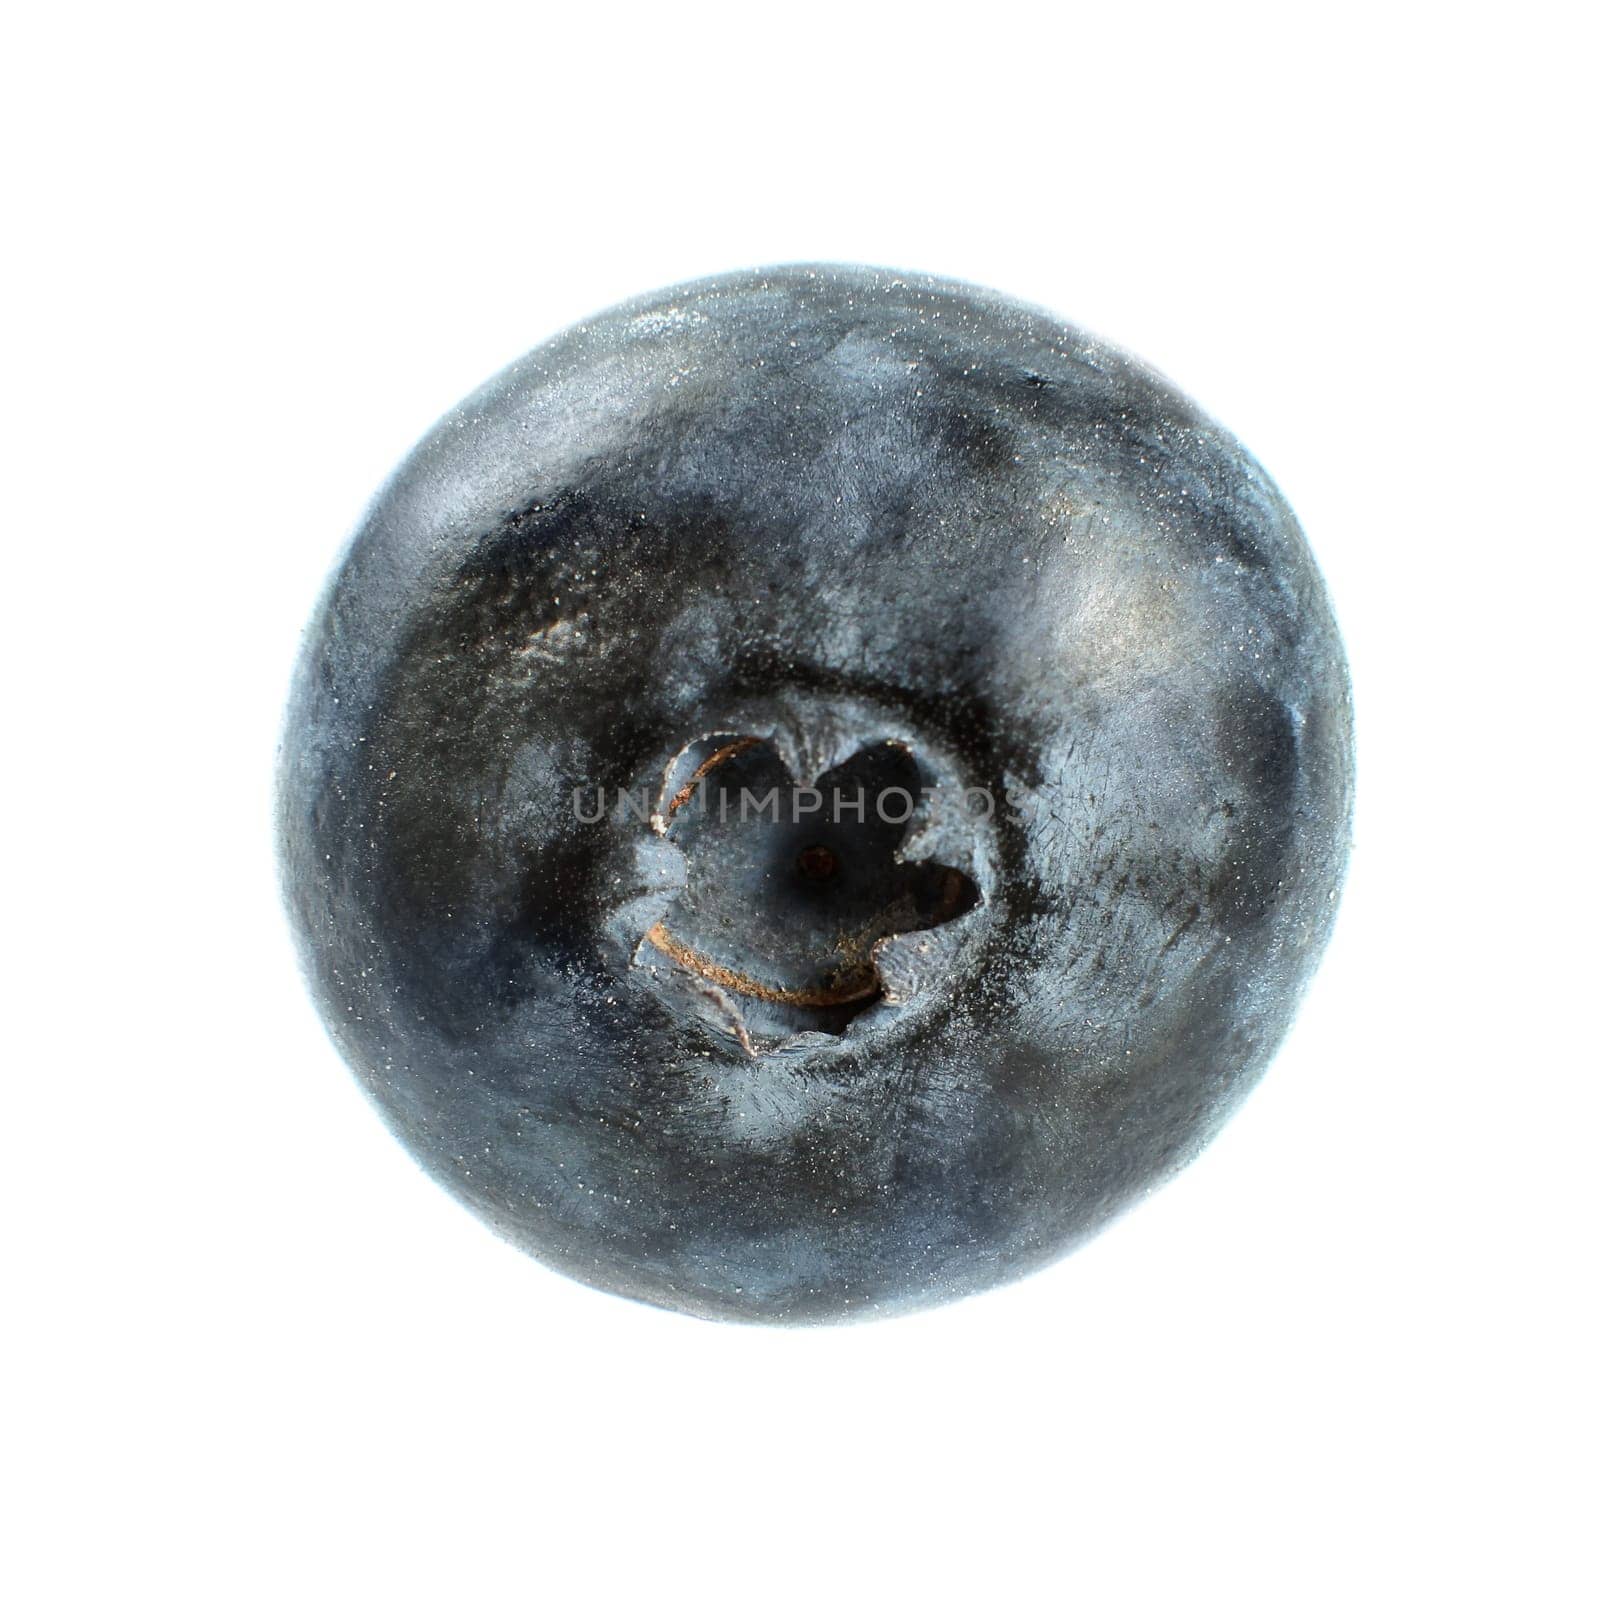 Single blueberry isolated on white background